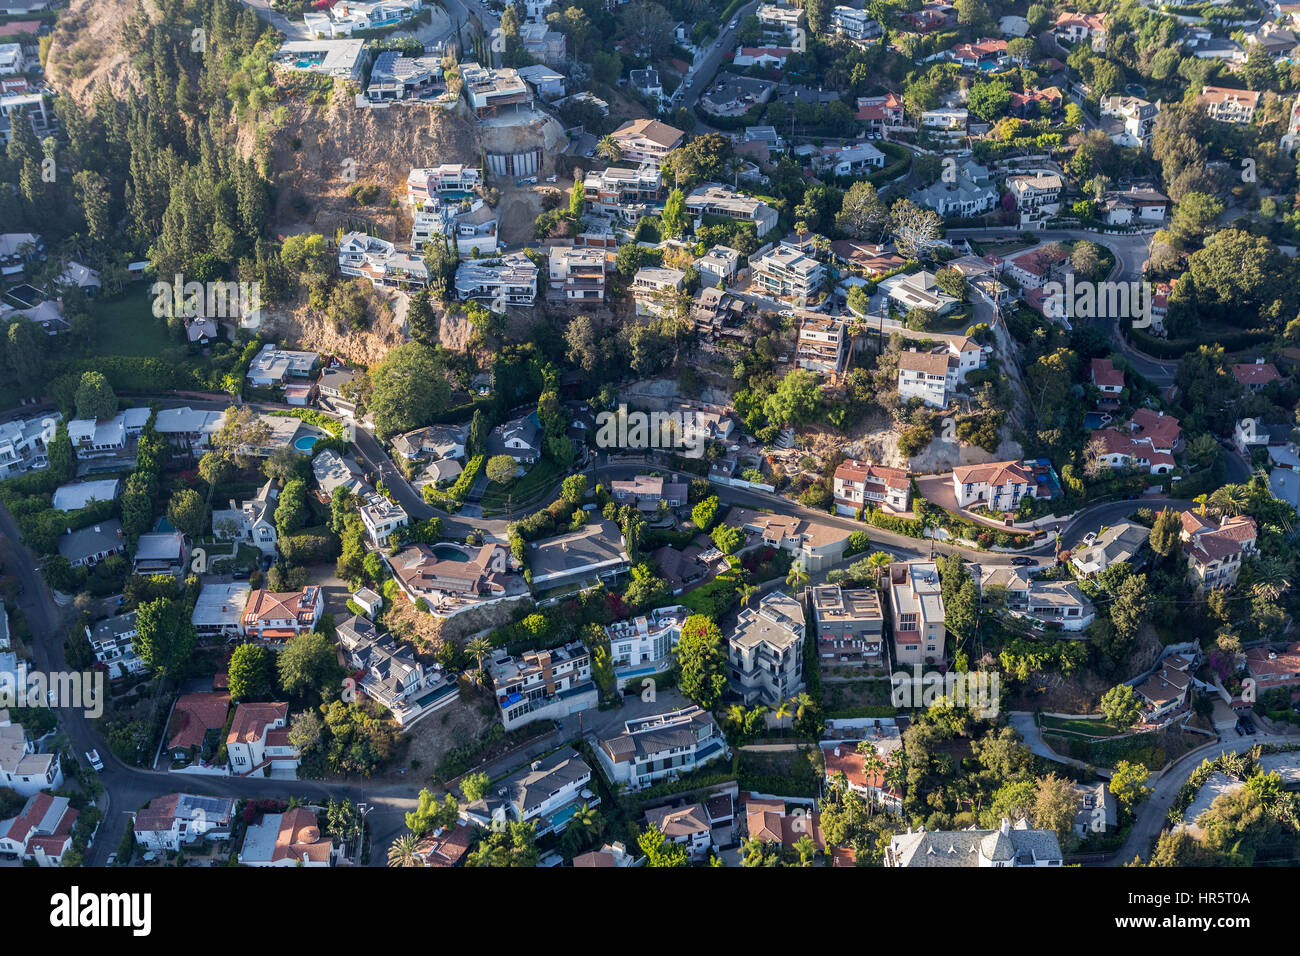 Los Angeles, California, Stati Uniti d'America - 6 Agosto 2016: Veduta aerea della zona alla moda di case in collina vicino a Laurel Canyon nelle colline sopra West Hollywood. Foto Stock